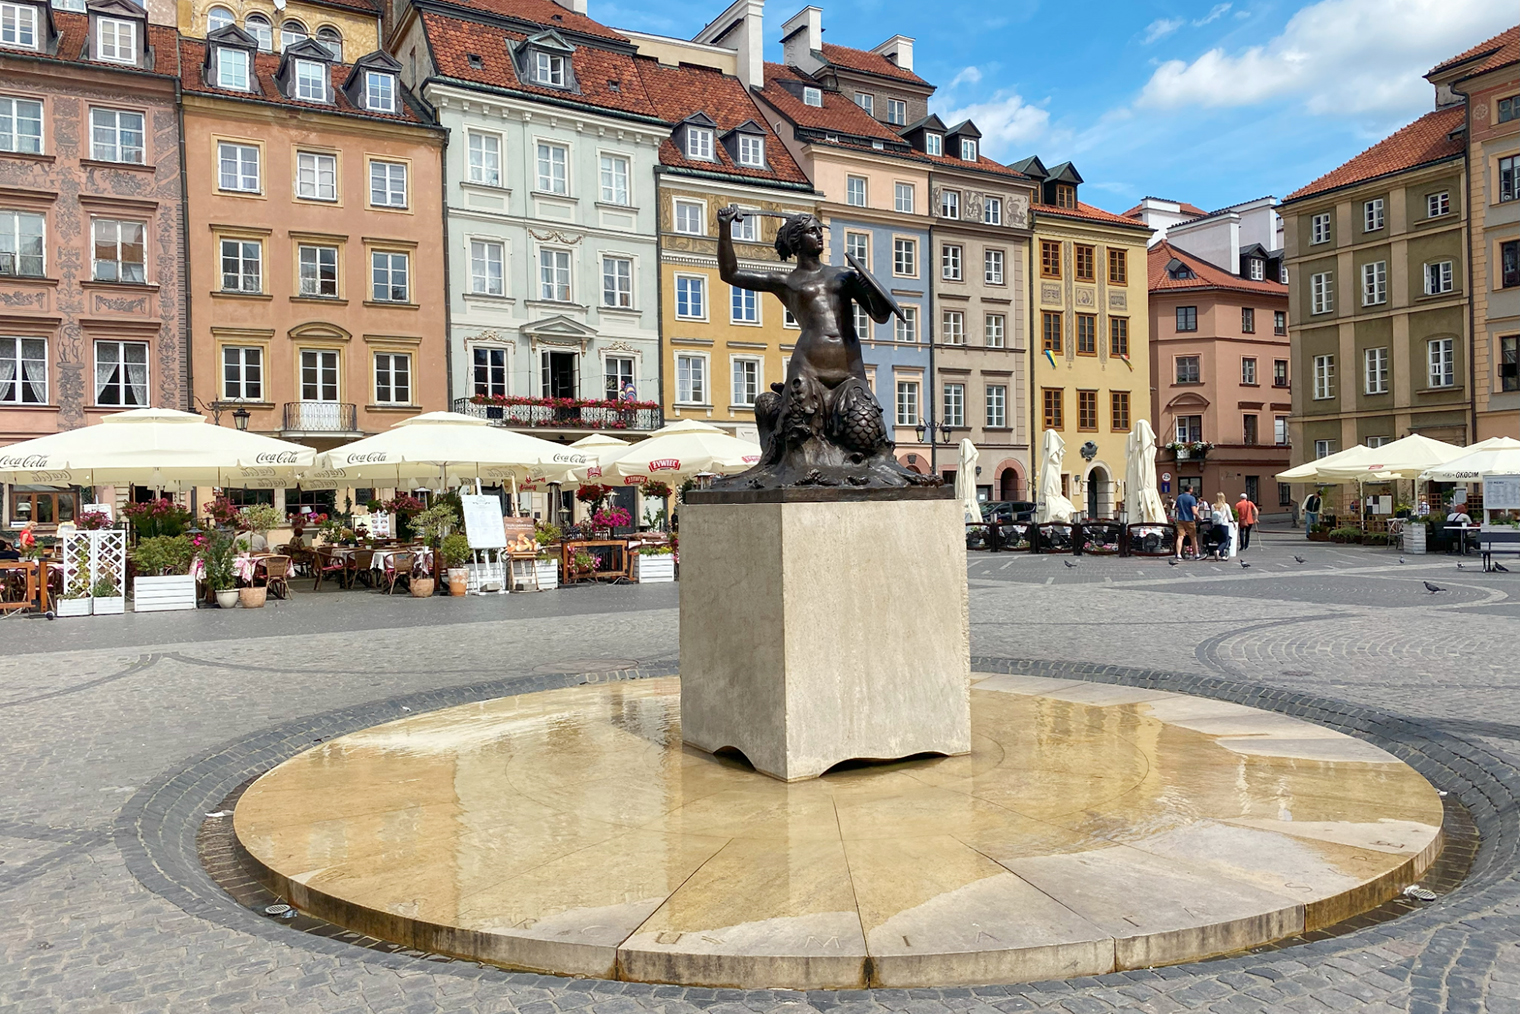 Мне понравилась Рыночная площадь Старого города с монументом Варшавской русалки